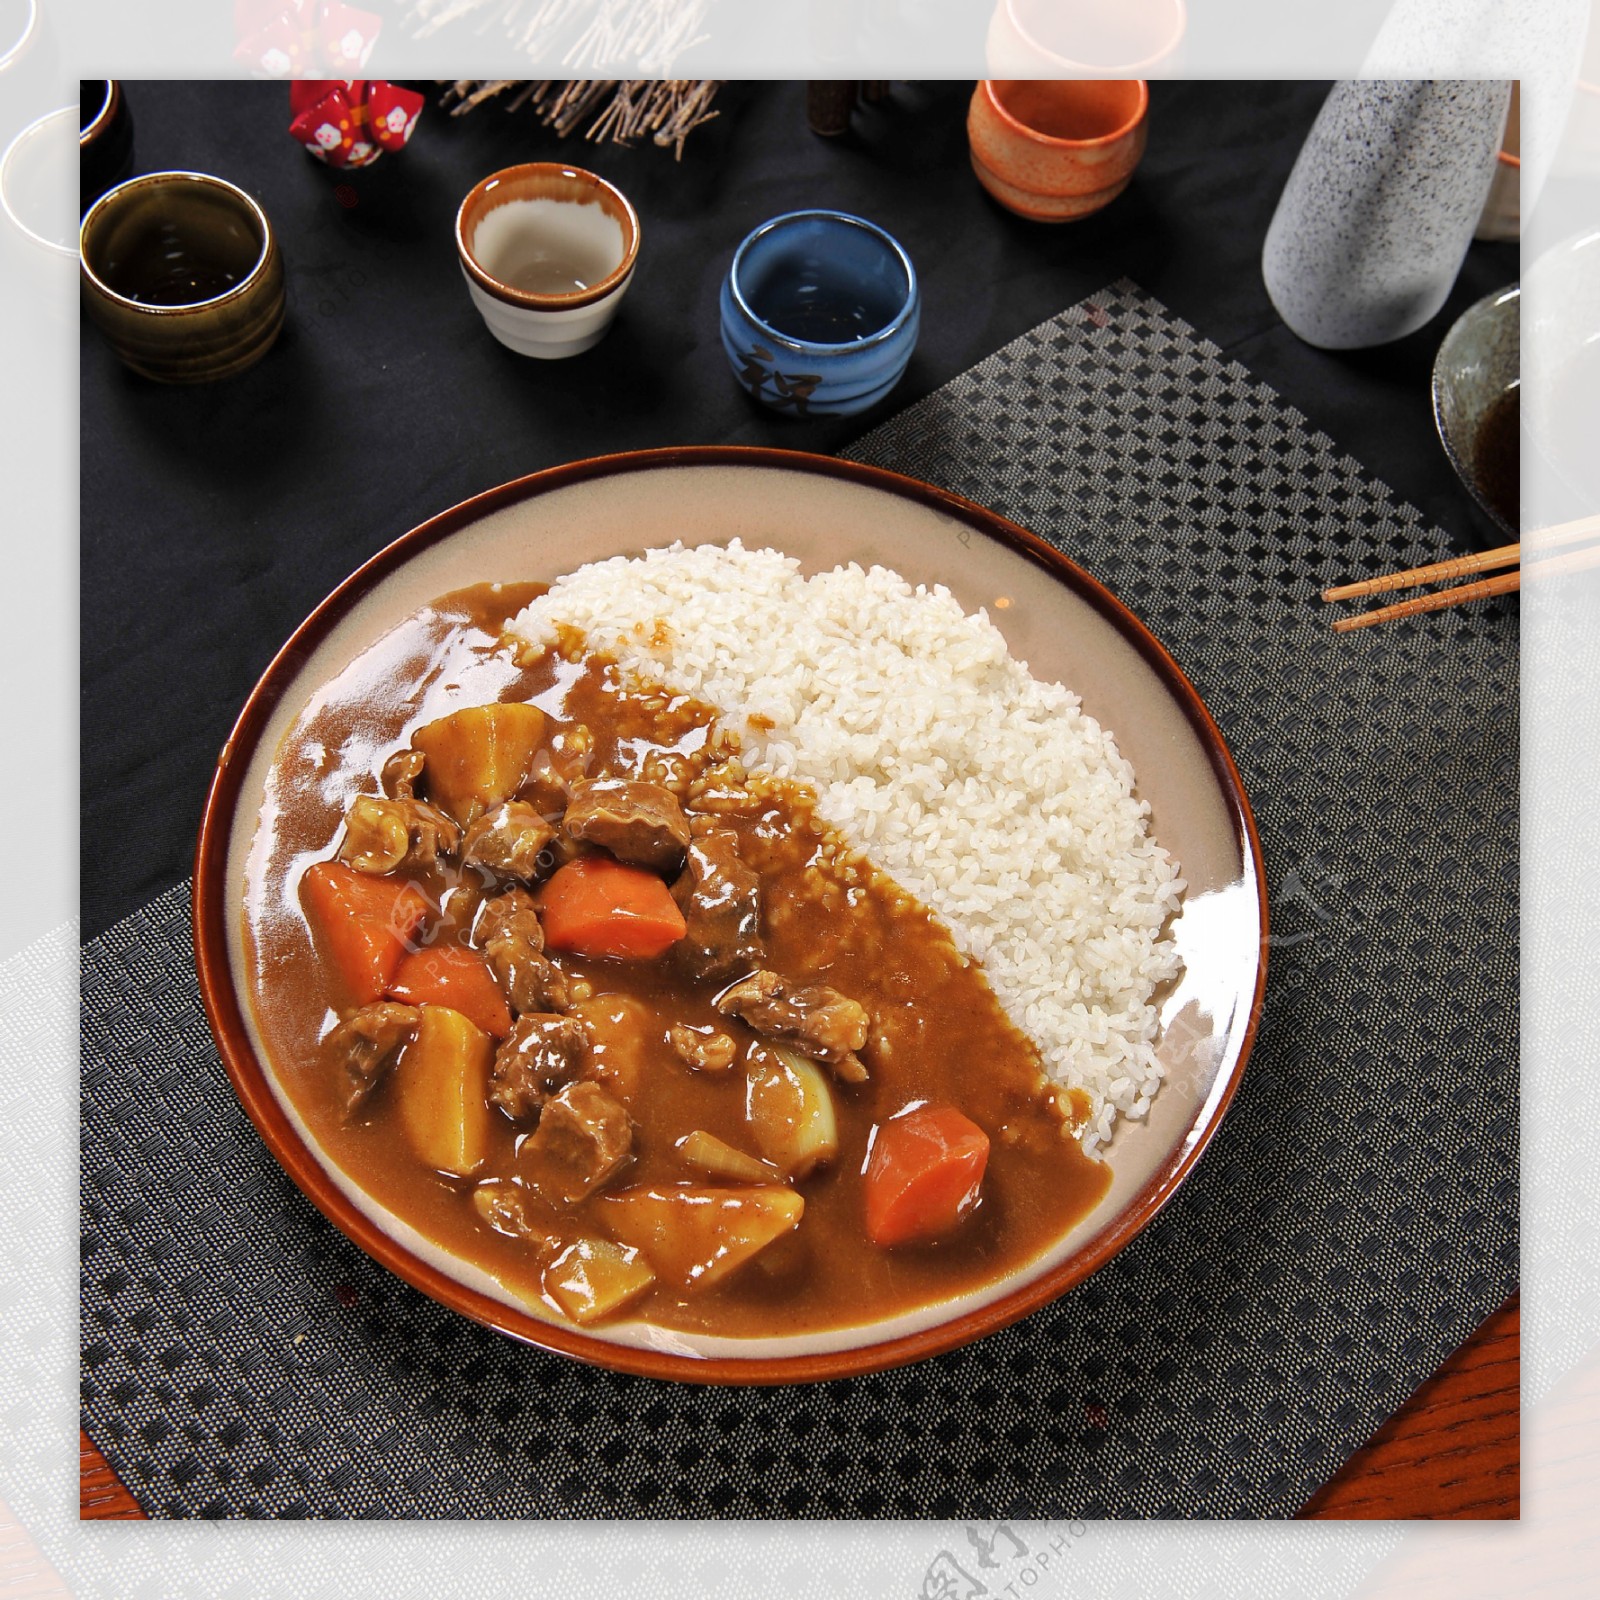 ZapPaLang: 日式咖哩饭 Shokudō Japanese Curry Rice @ Taman Paramount ...